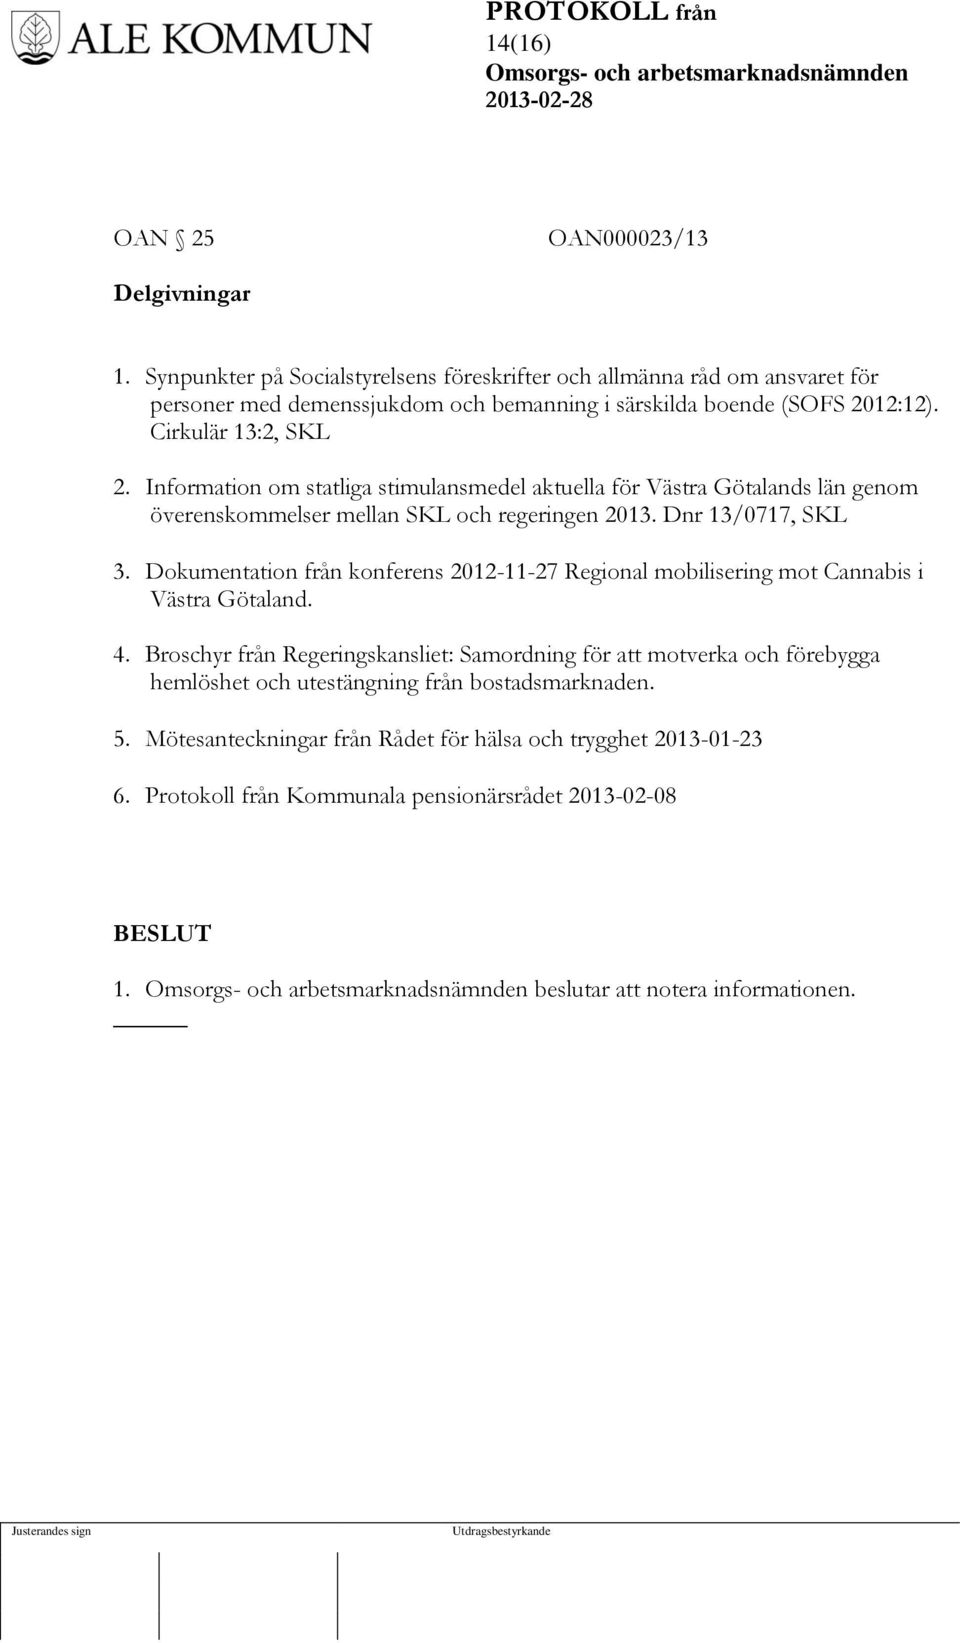 Information om statliga stimulansmedel aktuella för Västra Götalands län genom överenskommelser mellan SKL och regeringen 2013. Dnr 13/0717, SKL 3.